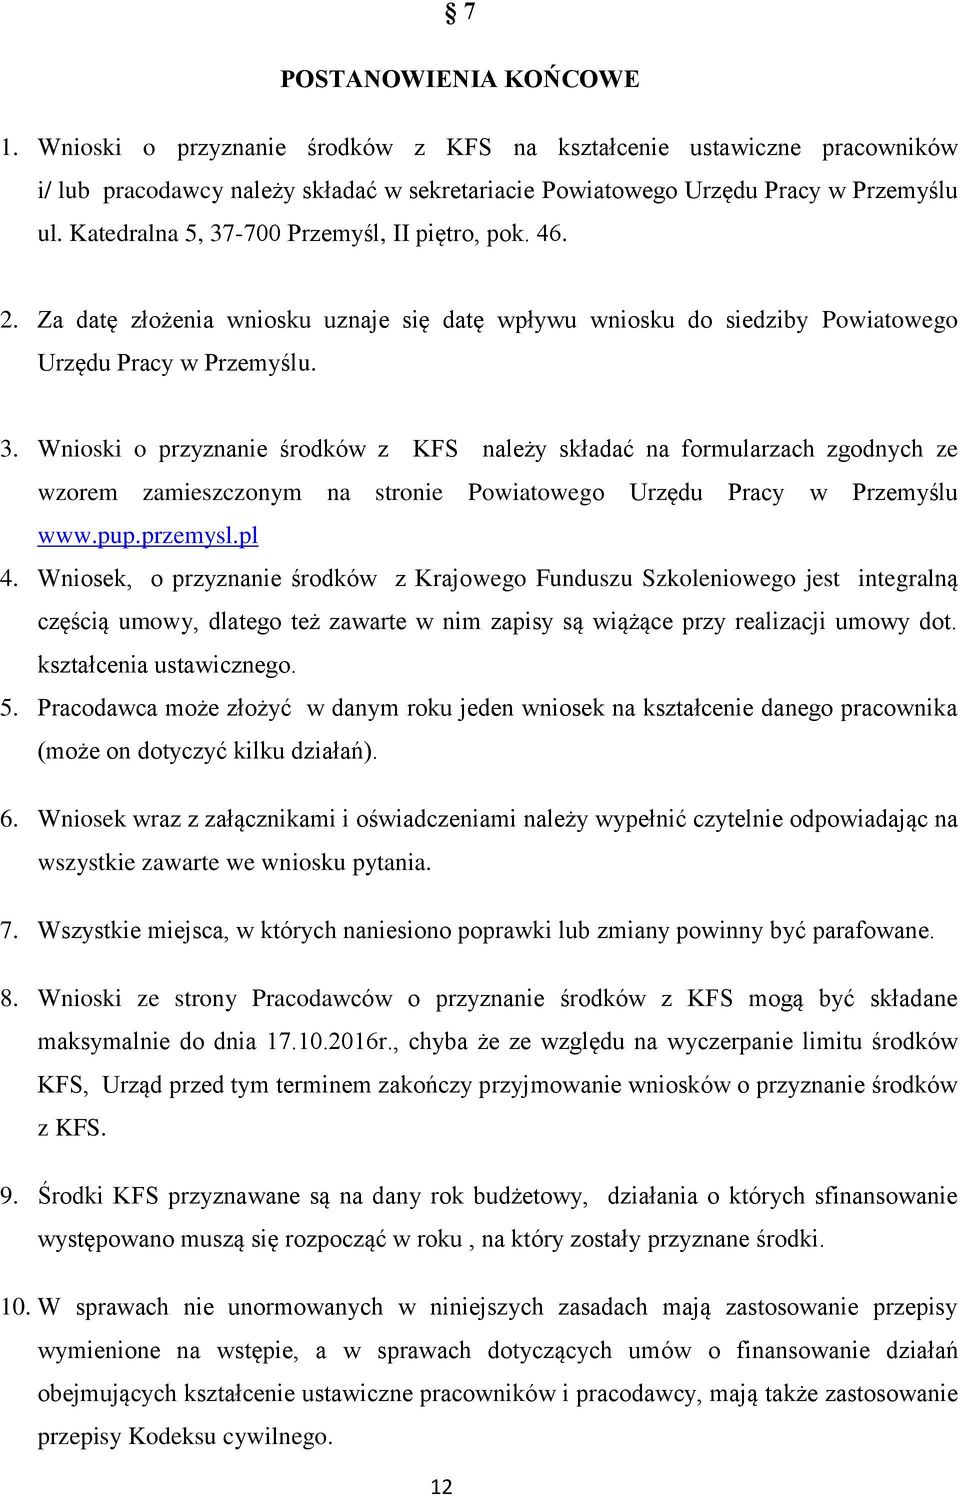 pup.przemysl.pl 4. Wniosek, o przyznanie środków z Krajowego Funduszu Szkoleniowego jest integralną częścią umowy, dlatego też zawarte w nim zapisy są wiążące przy realizacji umowy dot.